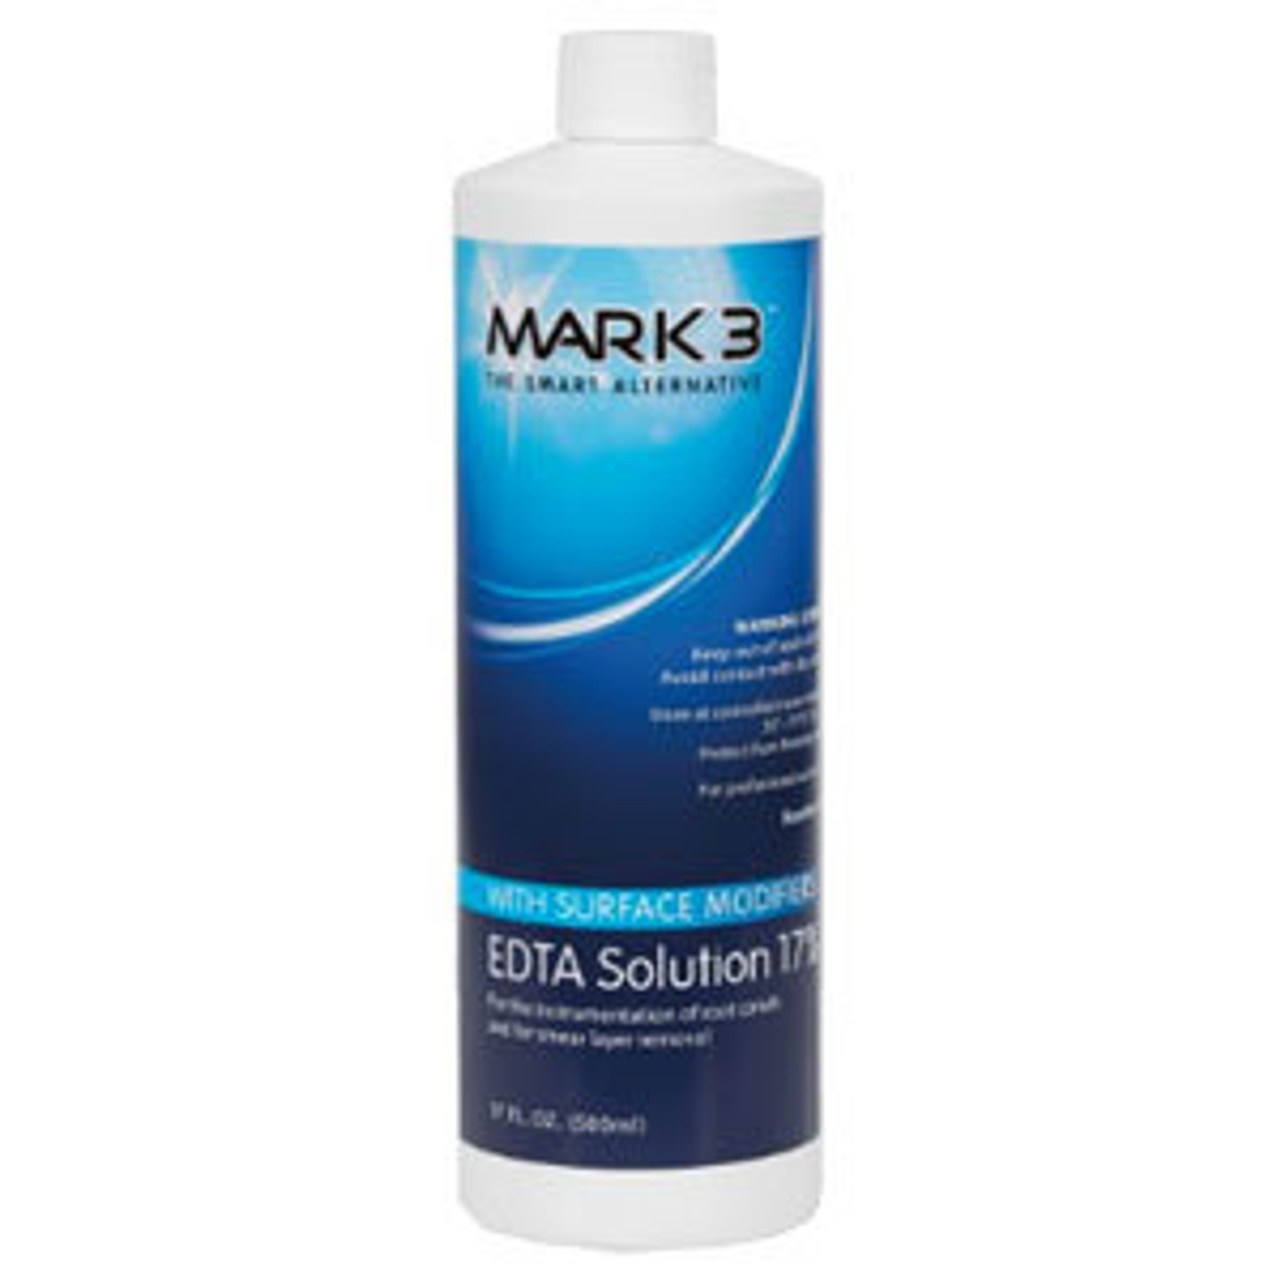 EDTA Solution 17% 17oz. 500ml. Bottle - MARK3*